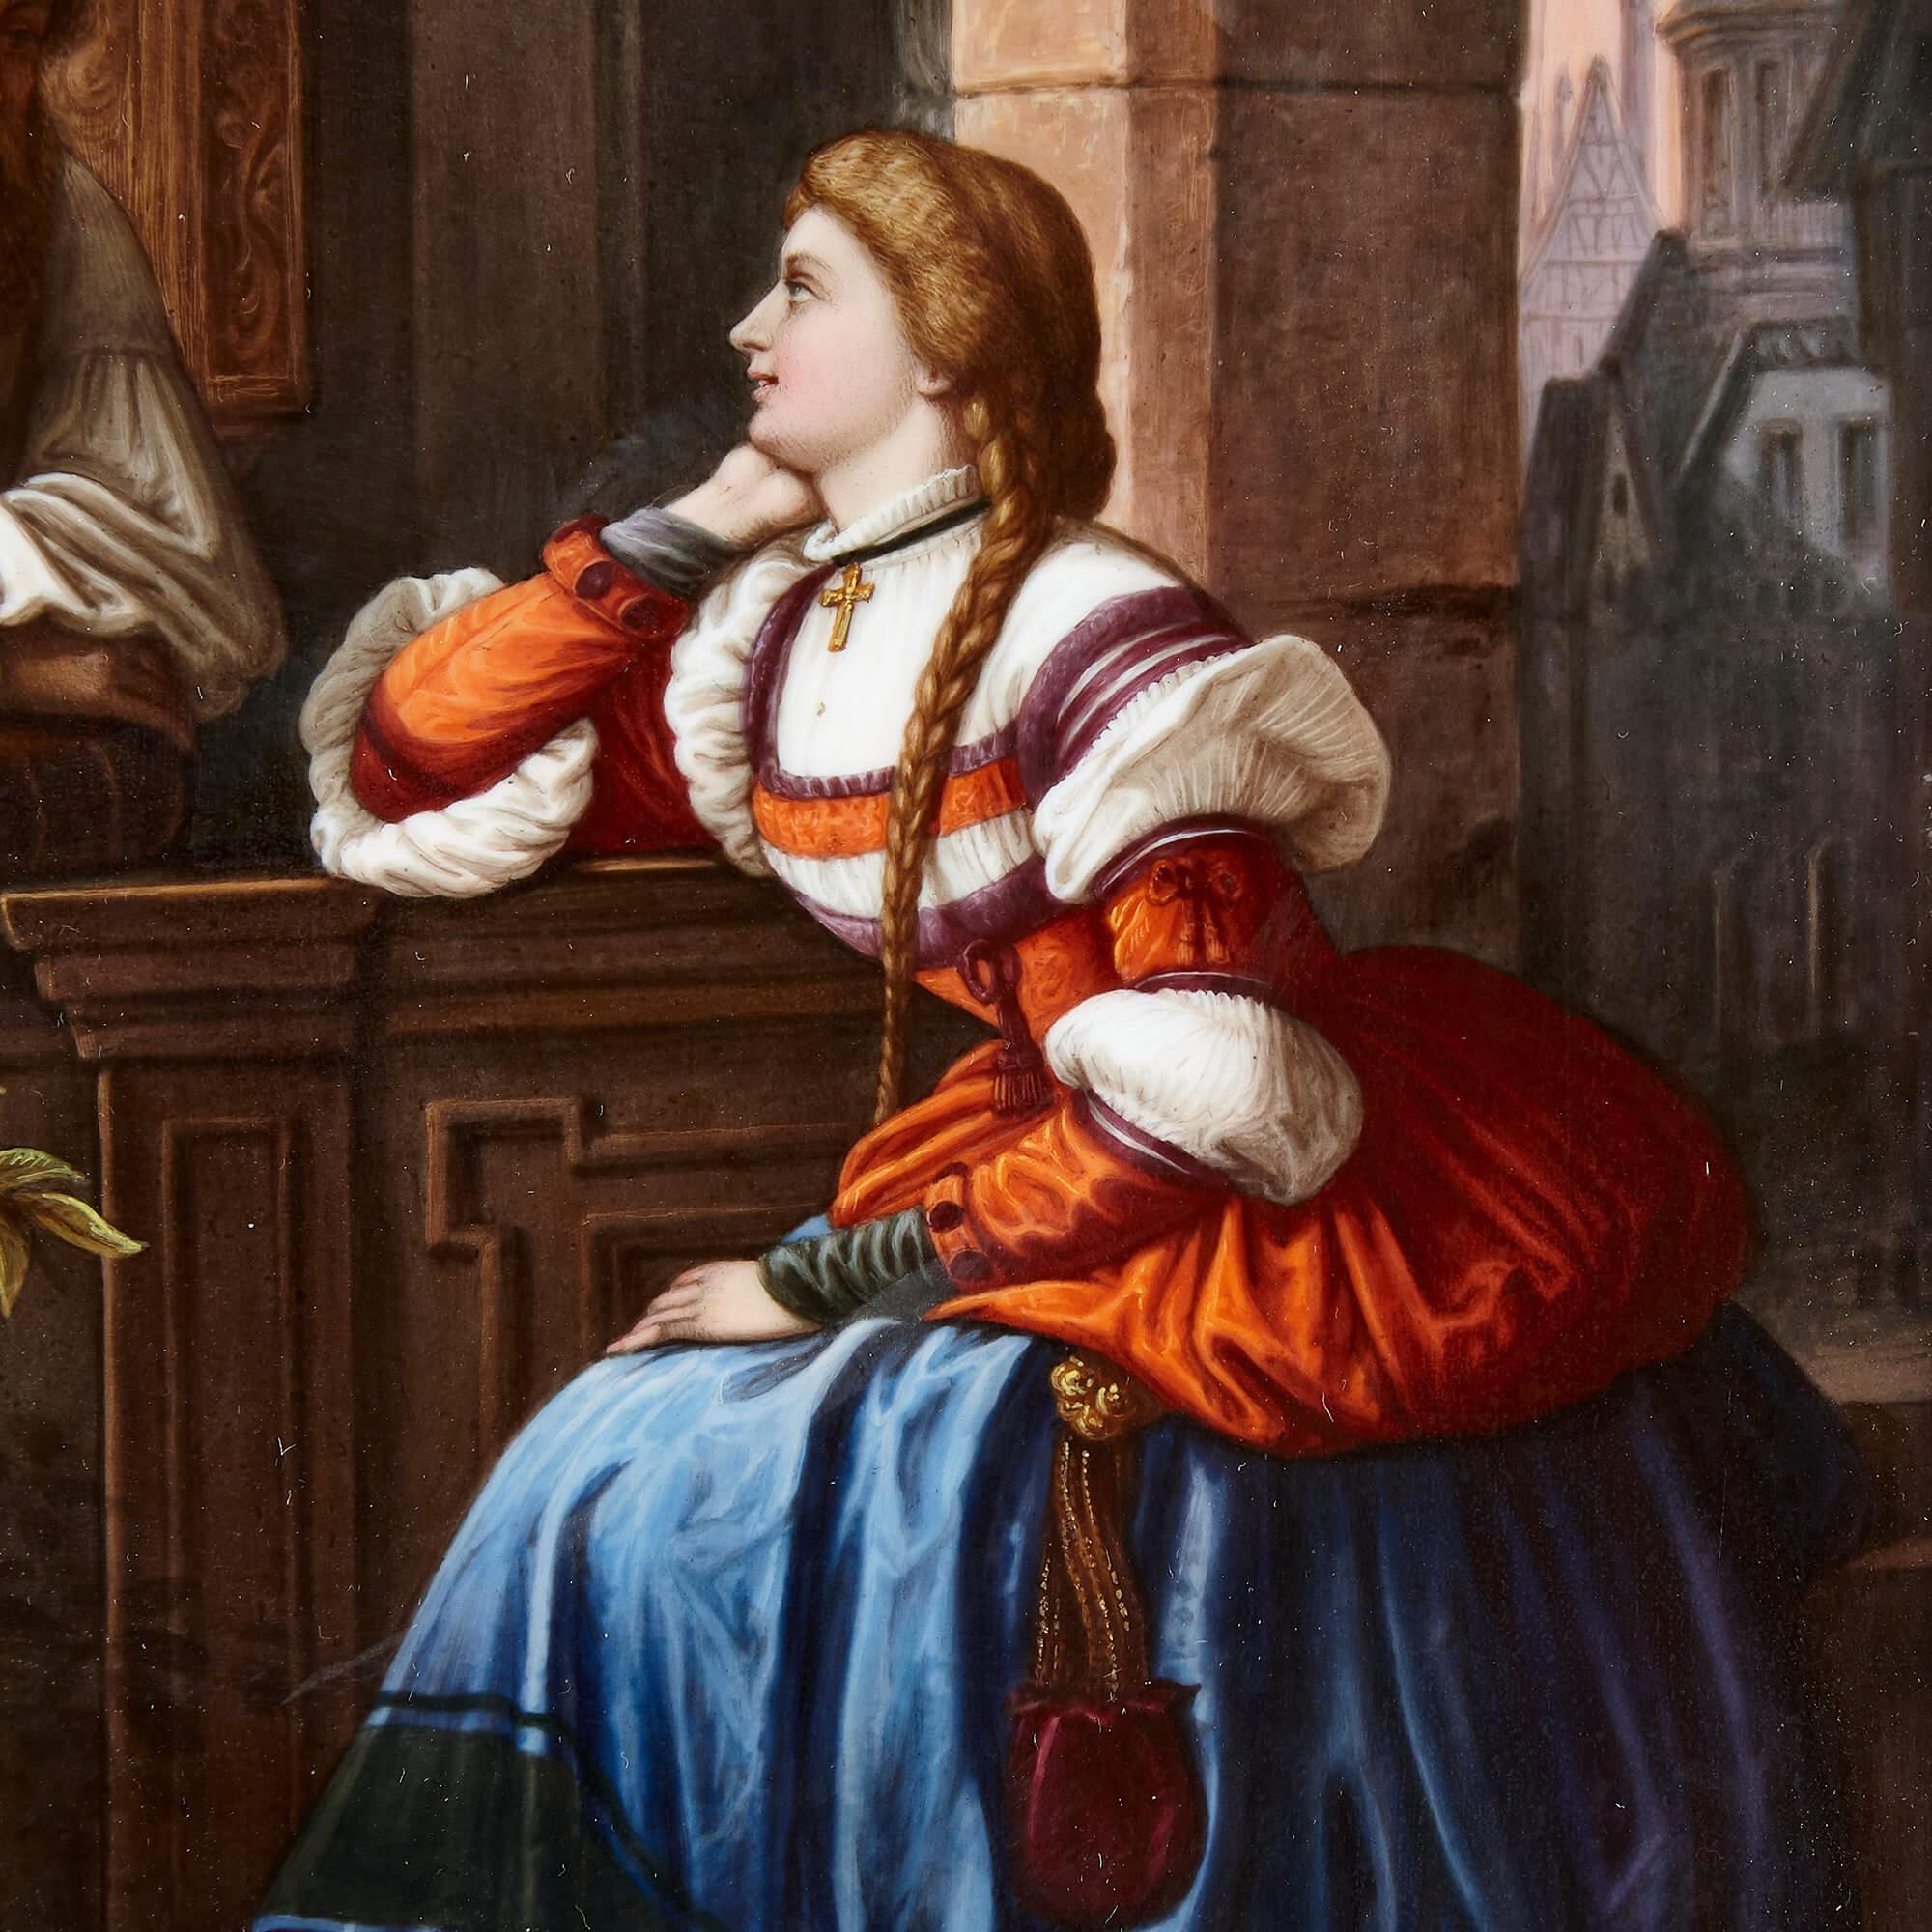 Diese feine und detaillierte deutsche Porzellanplakette zeigt einen Mann und eine Frau in mittelalterlicher Kleidung in einer architektonischen Umgebung. Die Frau mit dem blonden, geflochtenen Haar blickt sehnsüchtig auf den bärtigen Mann, der sich